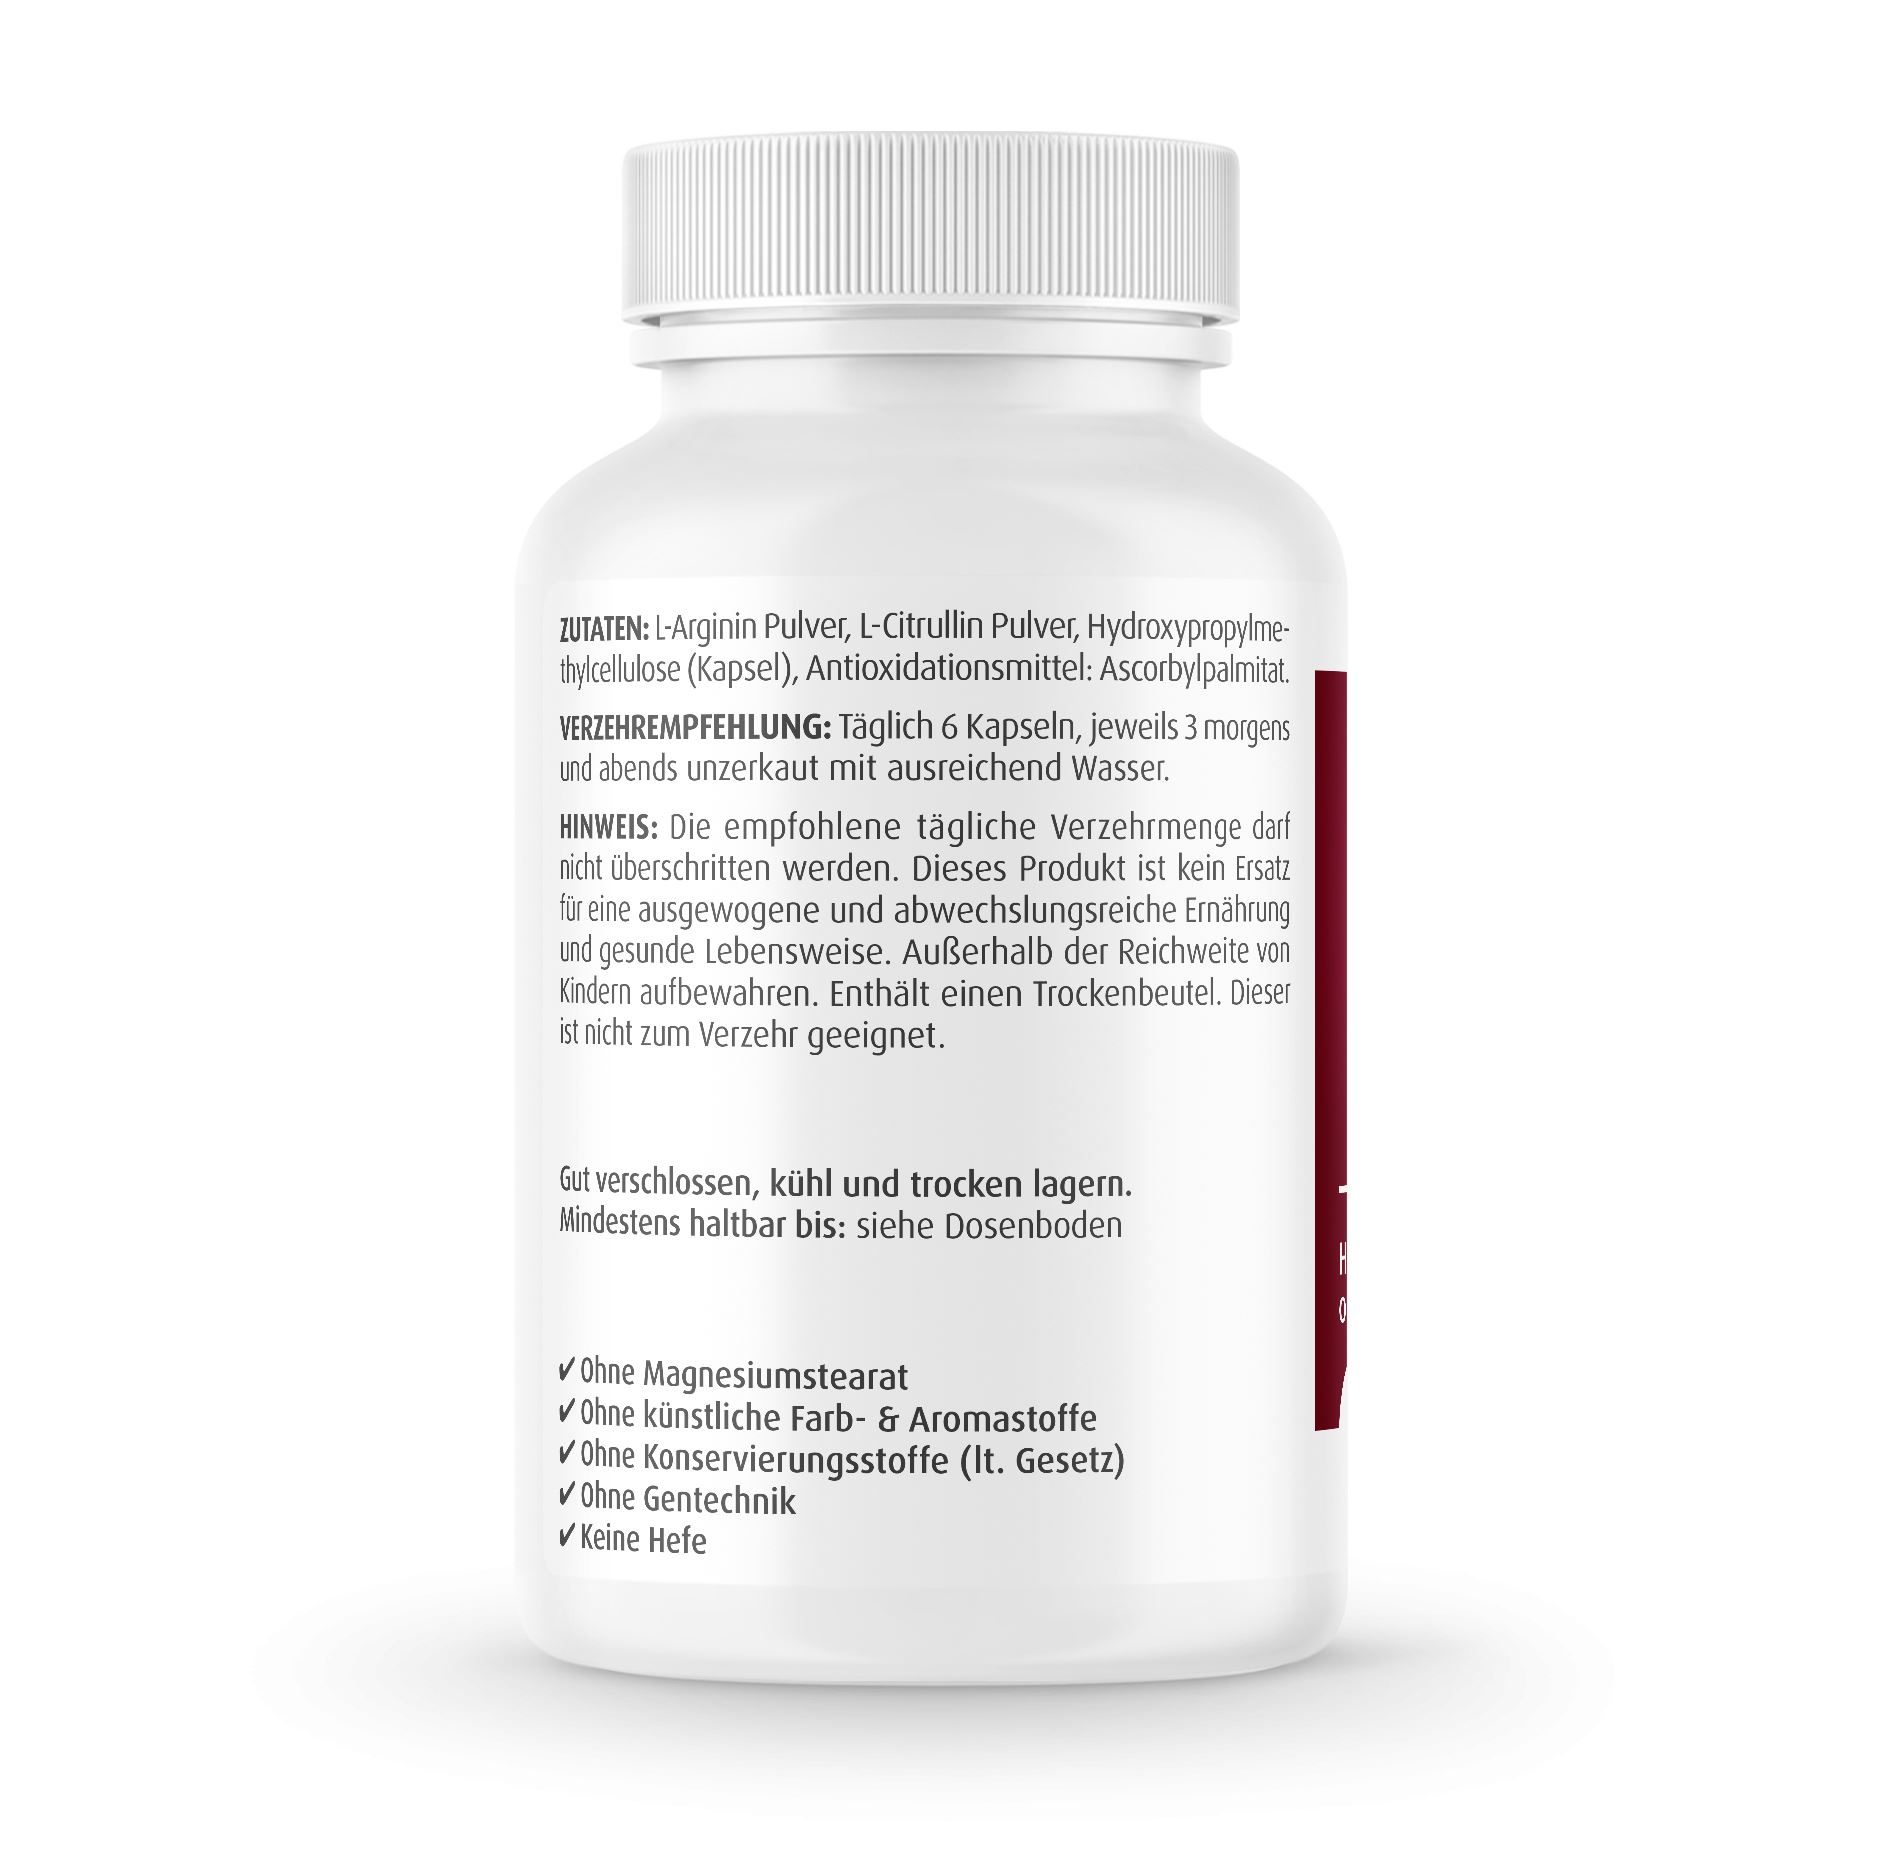 L-Arginin + L-Citrullin Kapseln 500 mg